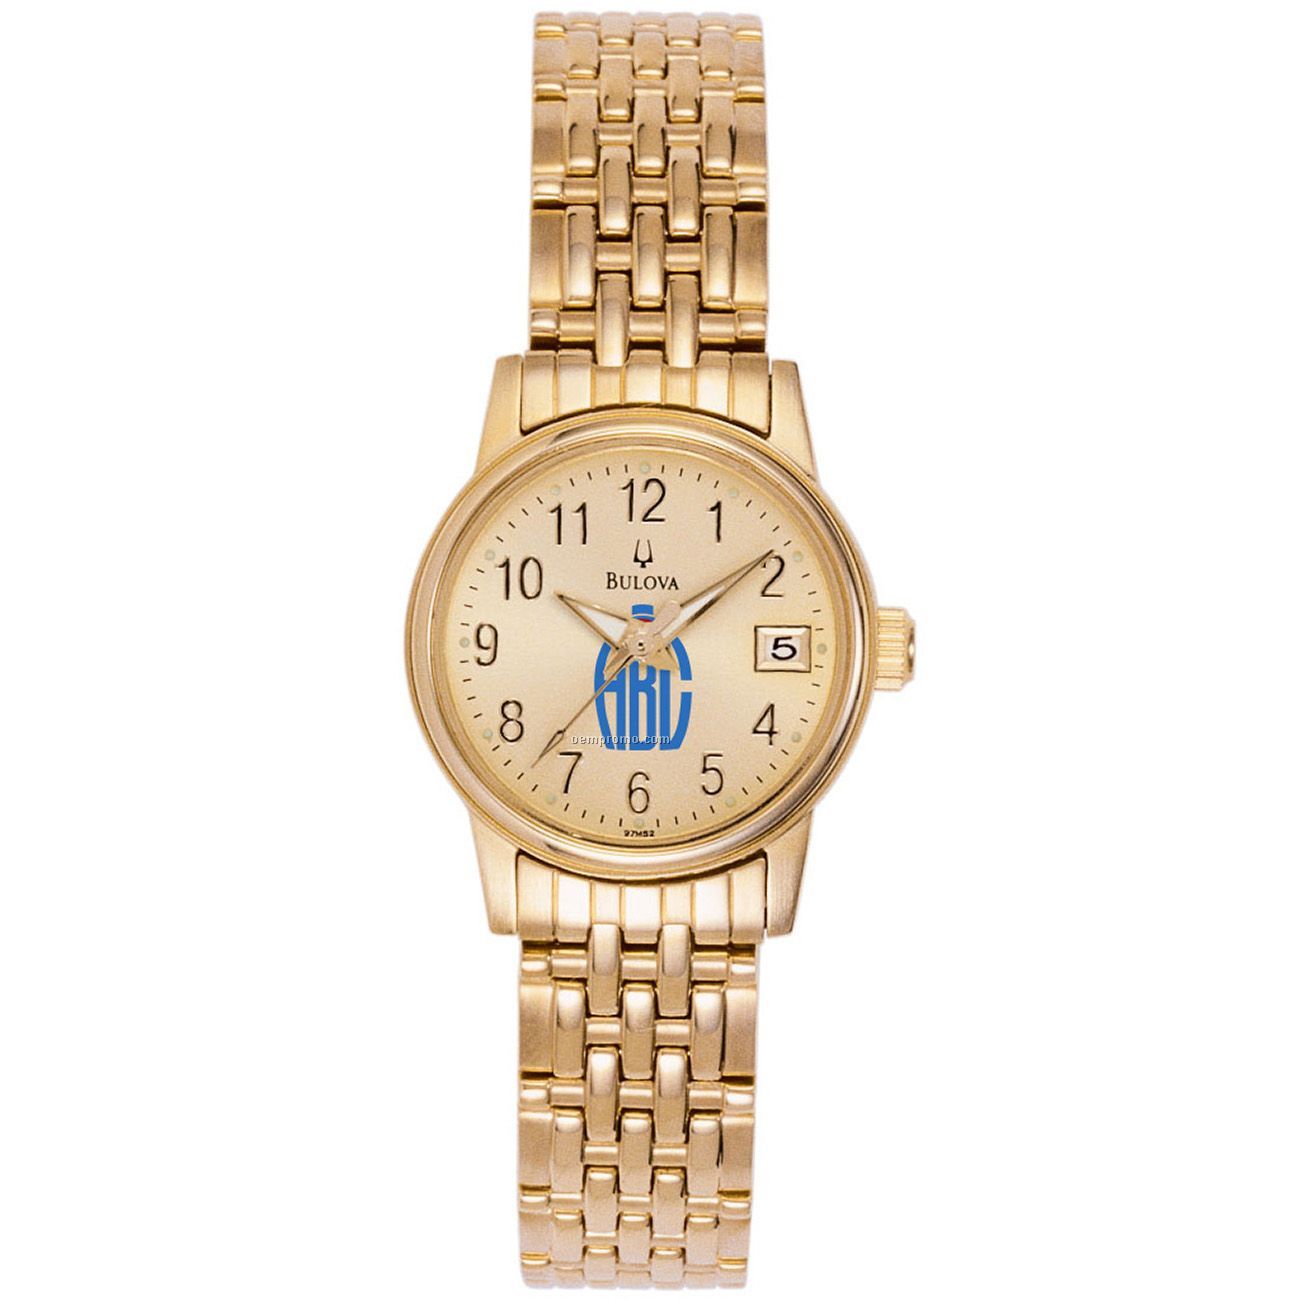  Analog Wrist Watch,China Wholesale Bulova Ladies39; Analog Wrist Watch